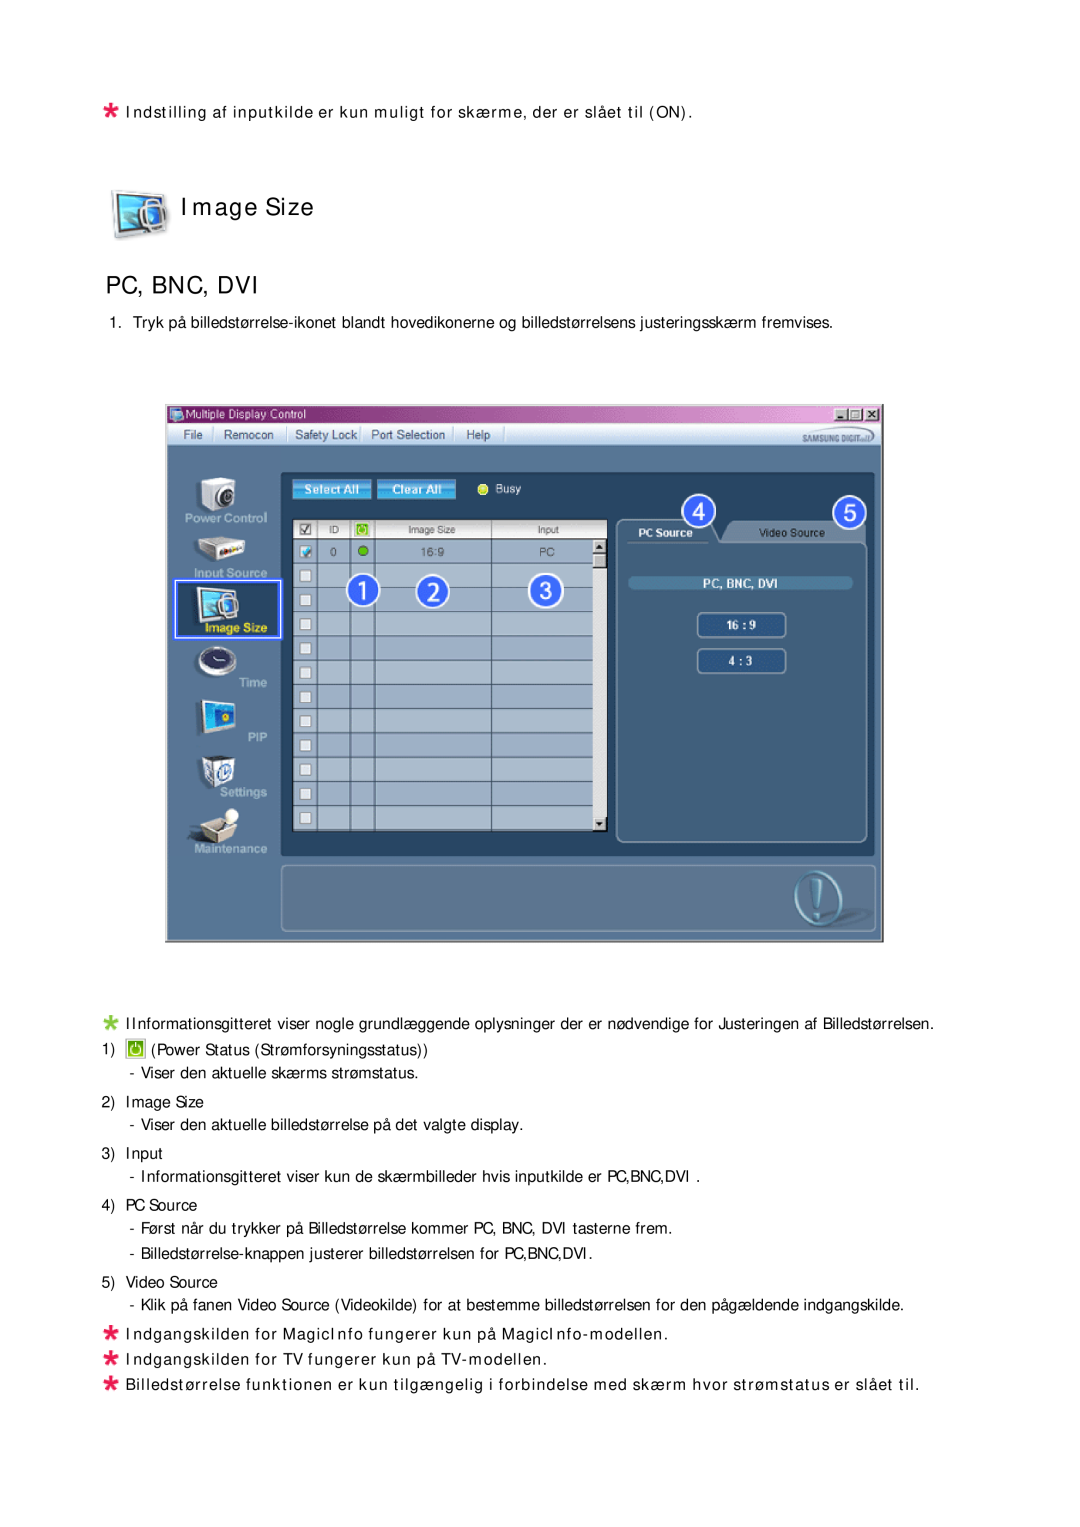 Samsung LH23PTSMBC/EN manual Image Size PC, BNC, DVI, Indgangskilden for MagicInfo fungerer kun på MagicInfo-modellen 